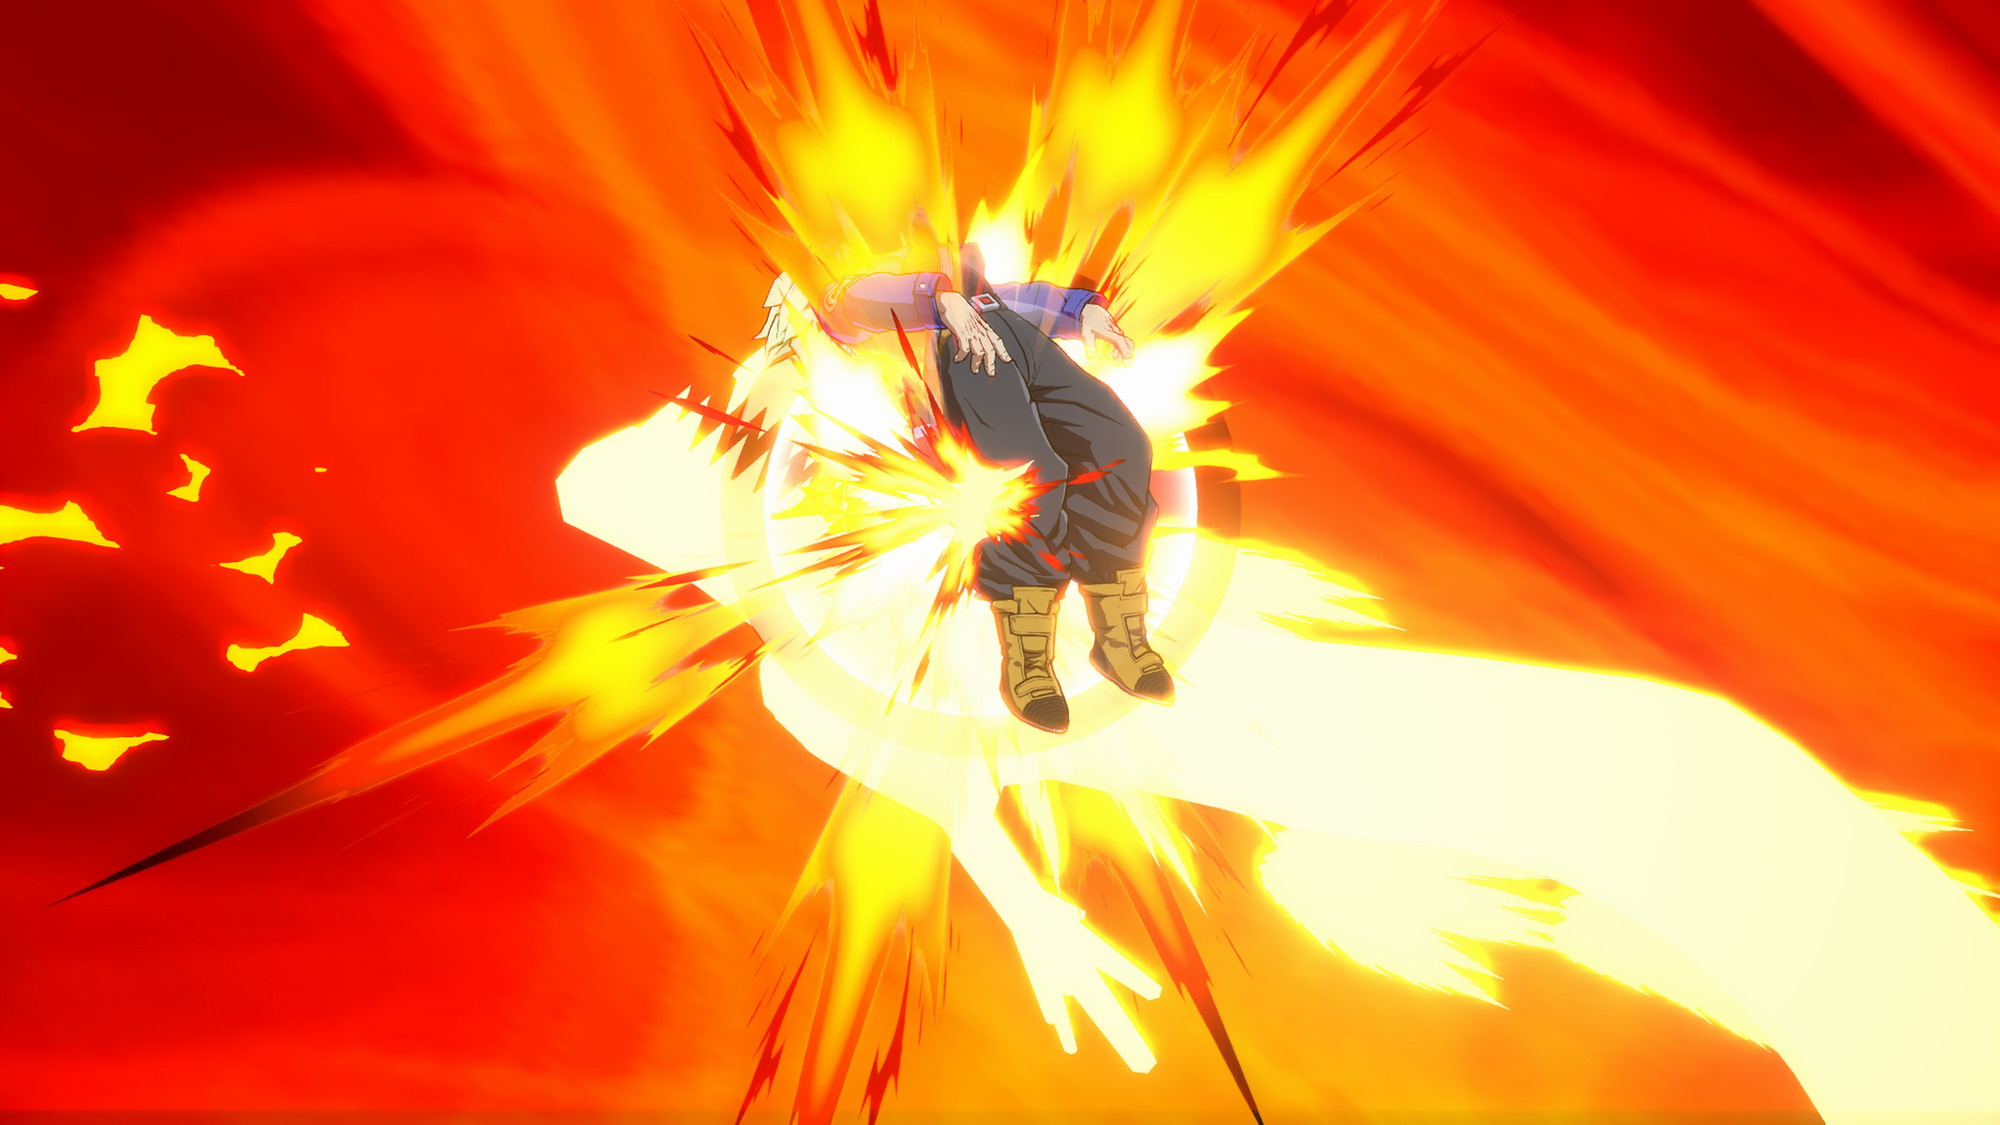 《七龍珠FighterZ》新DLC截圖欣賞 格鬥技能效果十分華麗